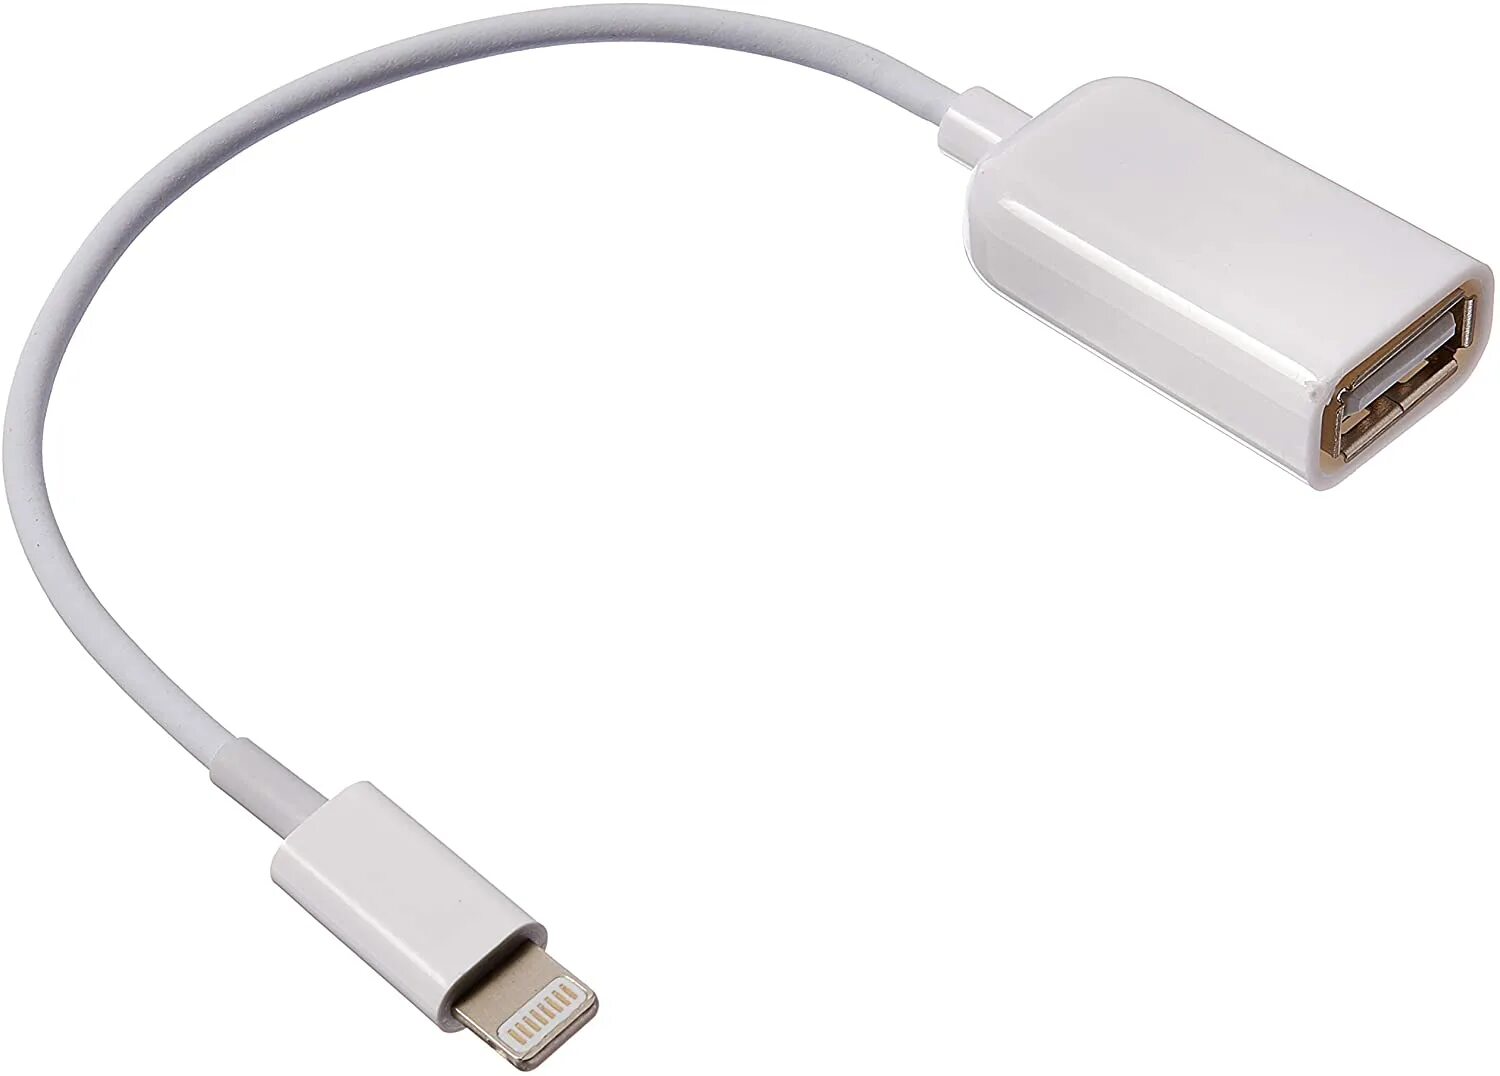 Переходник usb c на usb мама. Переходник OTG Lightning на USB. OTG переходник Apple. OTG Lightning USB 3.0. Переходник для Apple Lightning 8pin на USB мама.